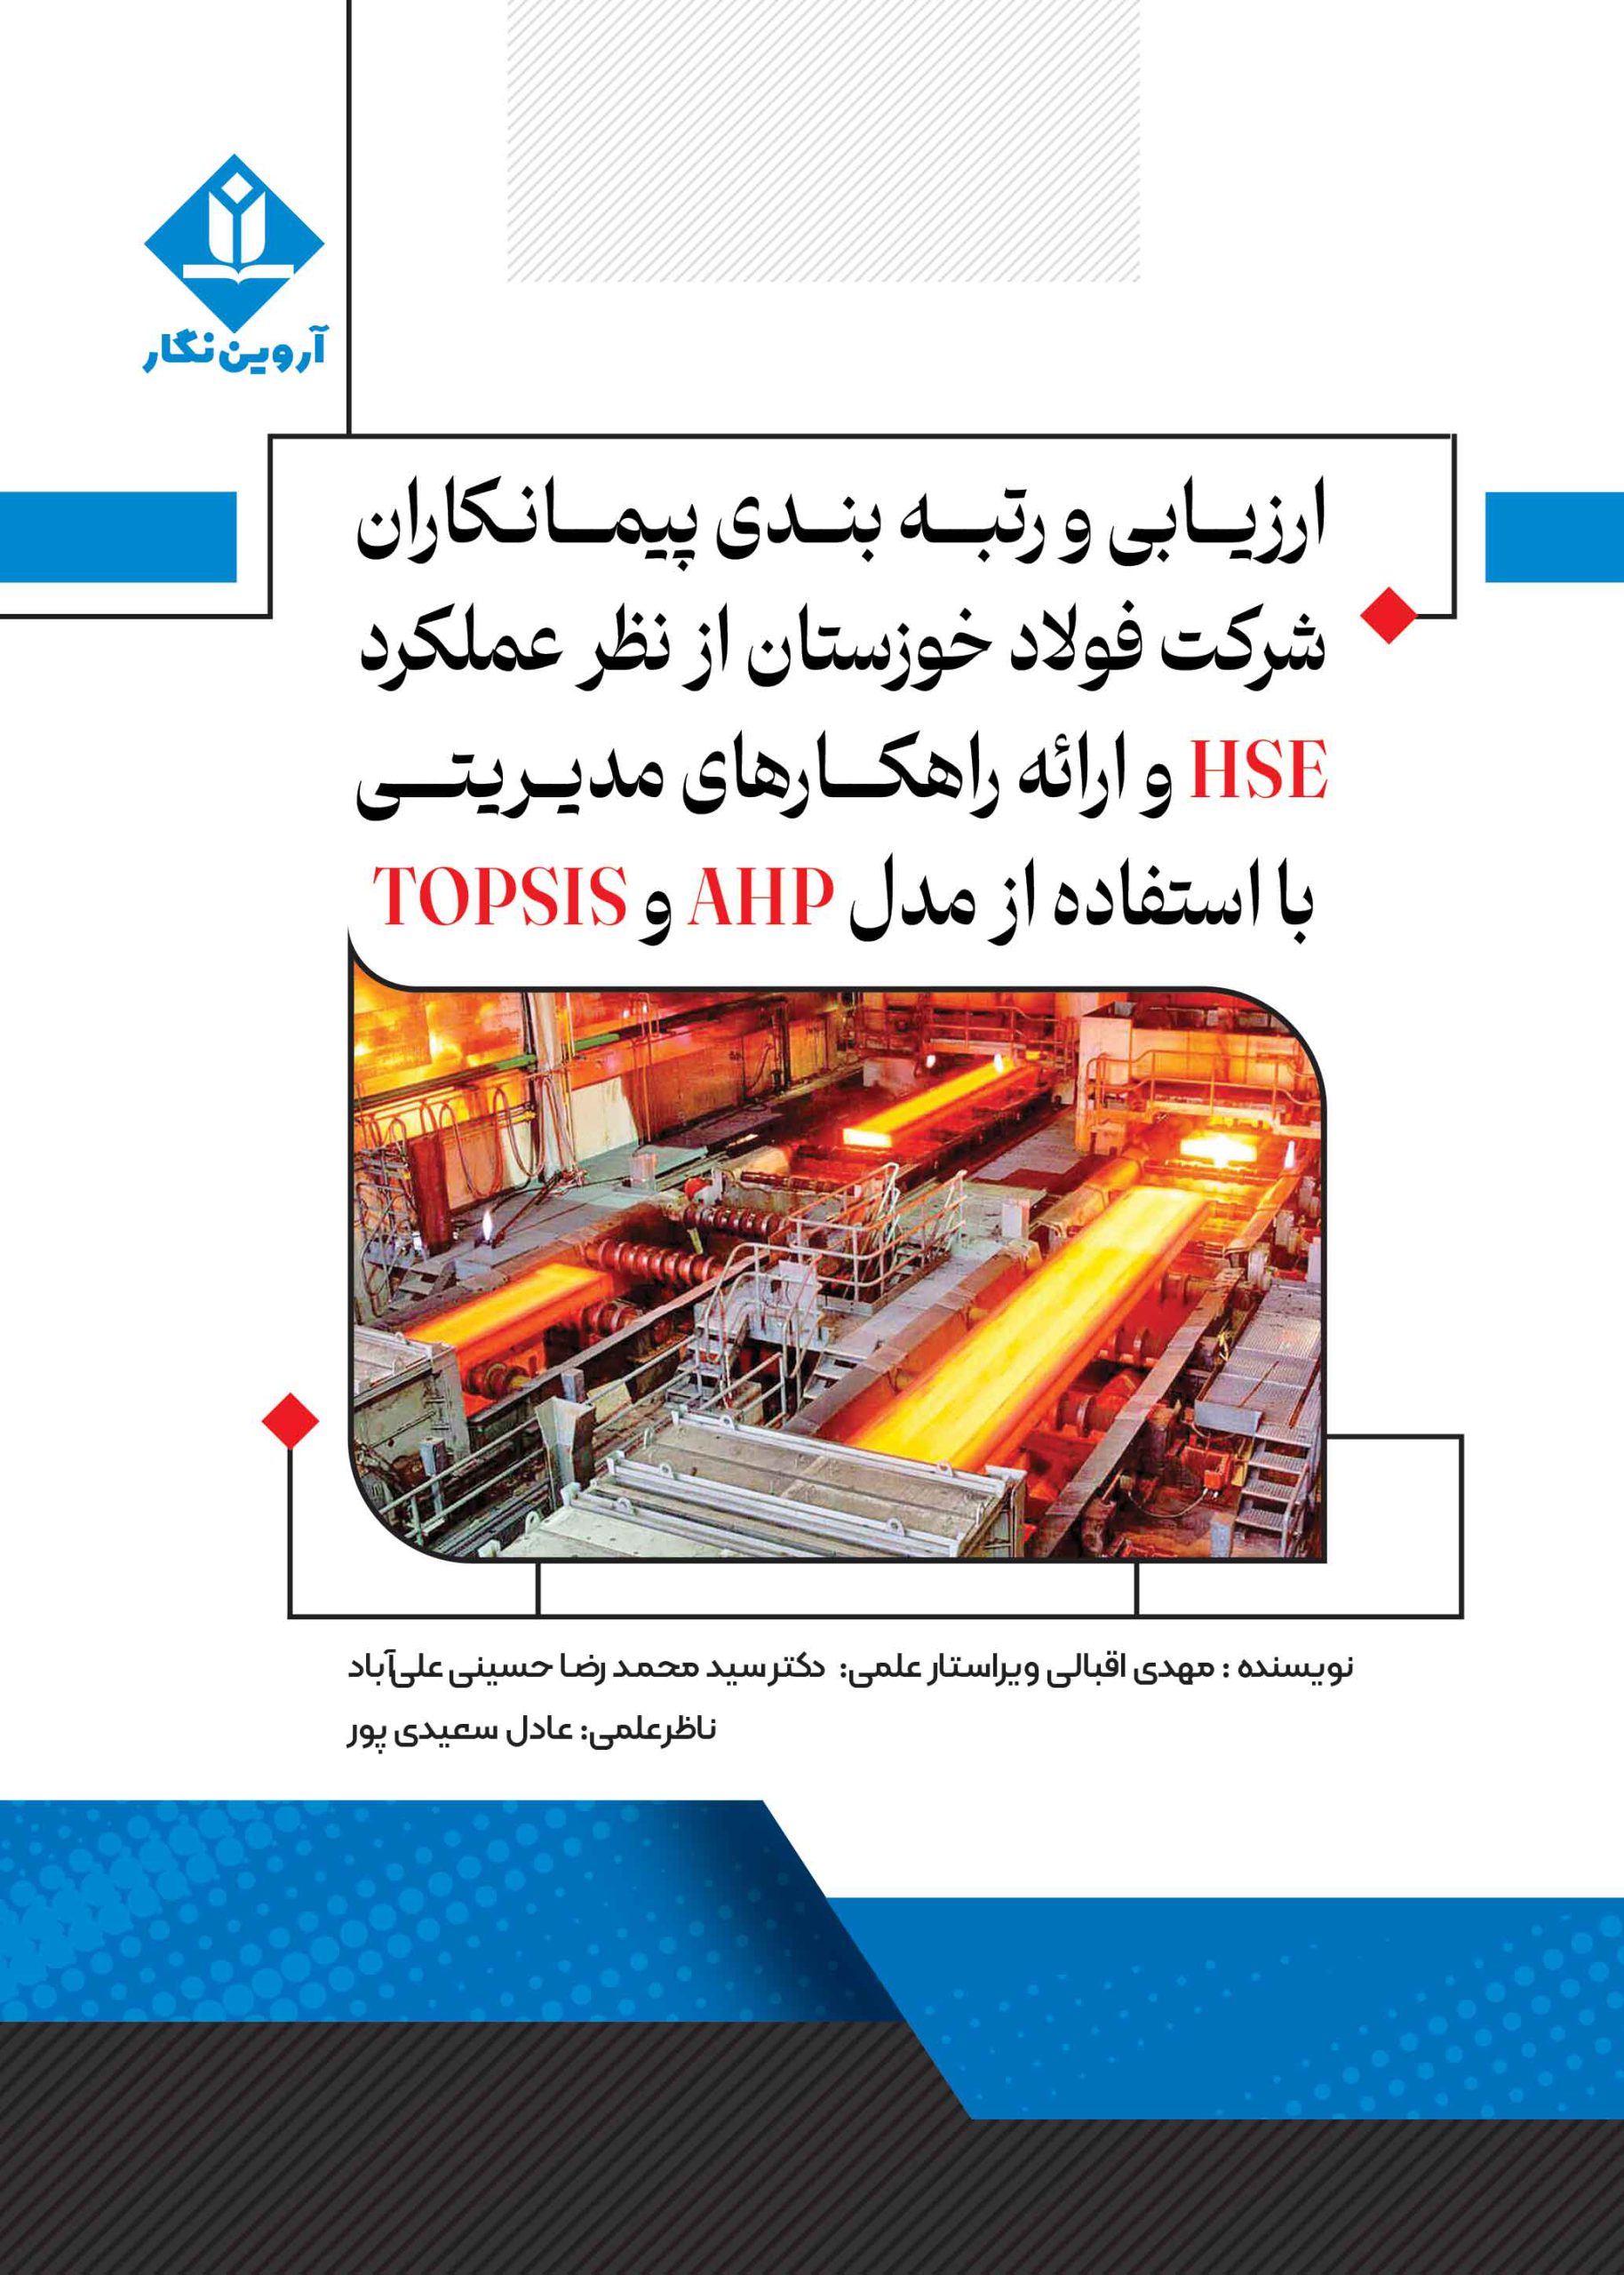 ارزیابی و رتبه بندی پیمانکاران شرکت فولاد خوزستان از نظر عملکرد HSE و ارائه راهکارهای مدیریتی با استفاده از مدل AHP و TOPSIS